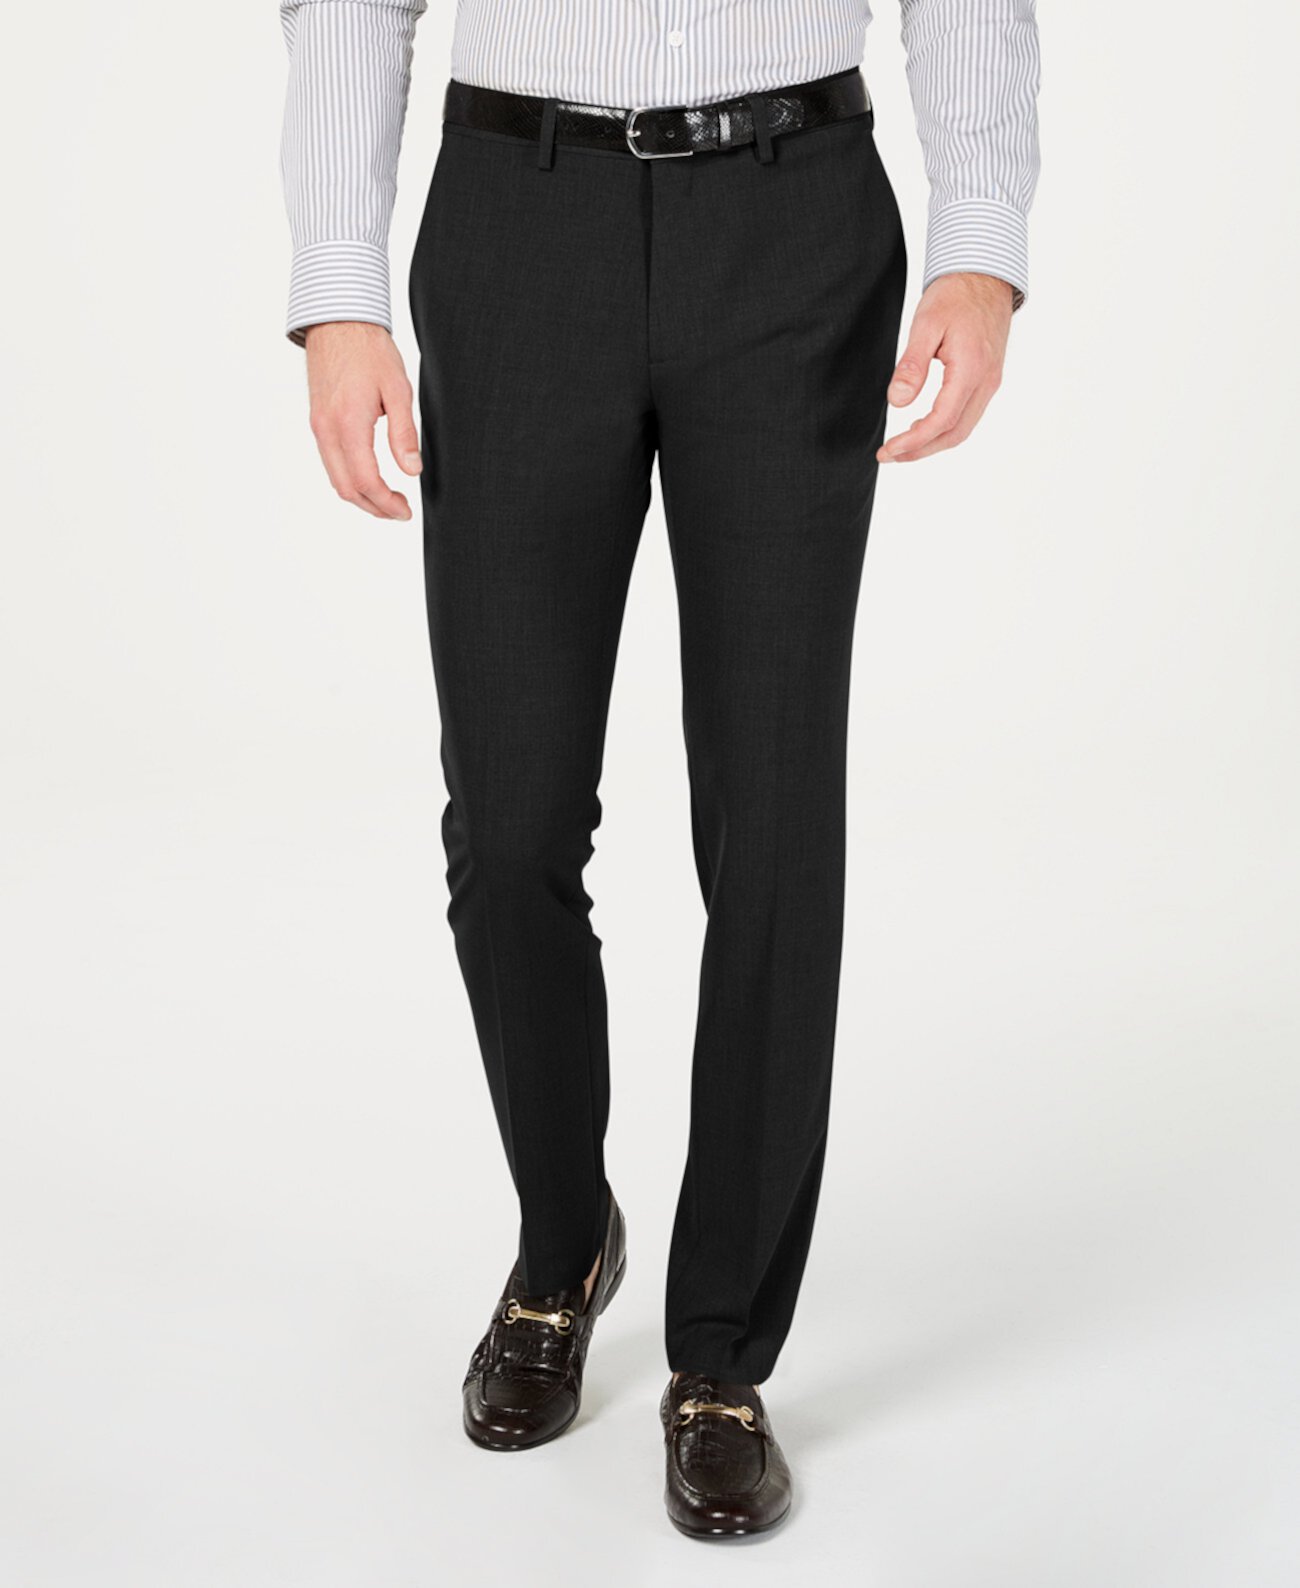 Мужские габардиновые узкие / сверхтонкие классические брюки из эластичного материала на плоской подошве Kenneth Cole